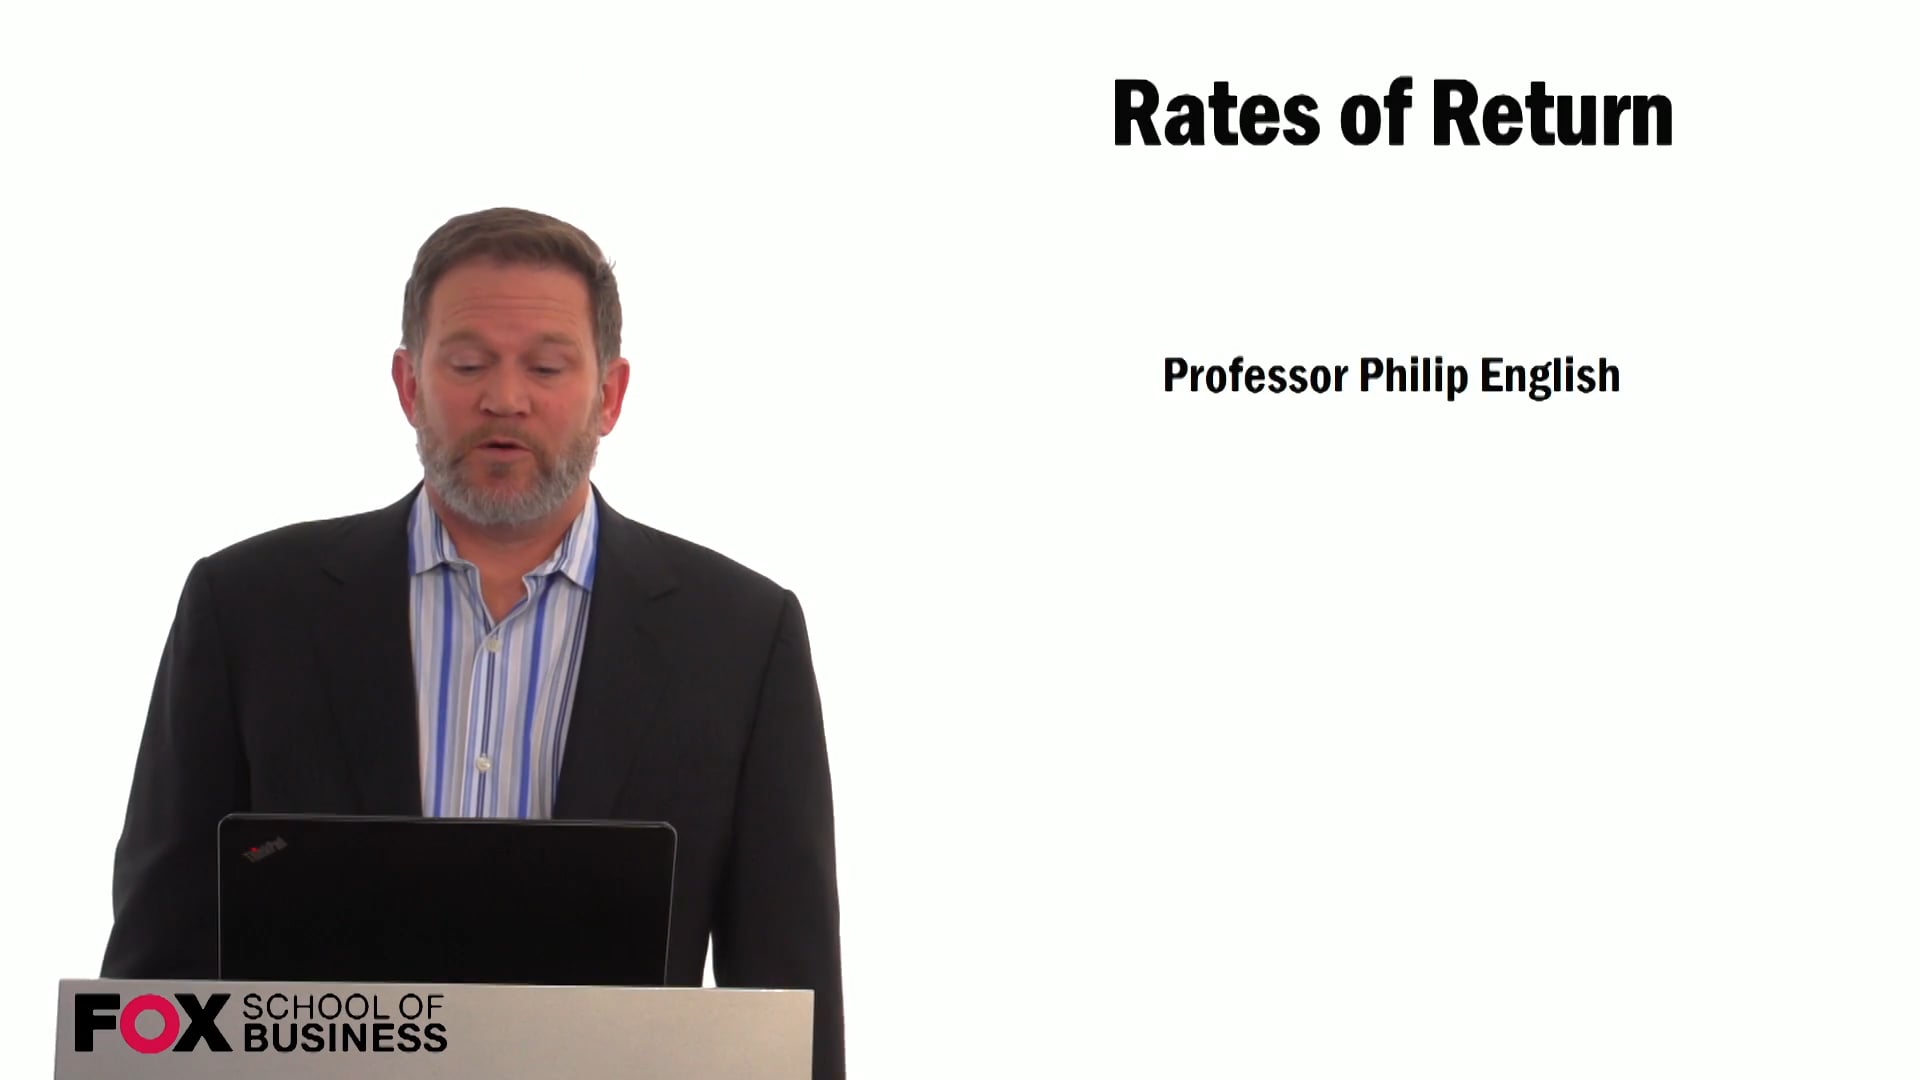 Rates of Return